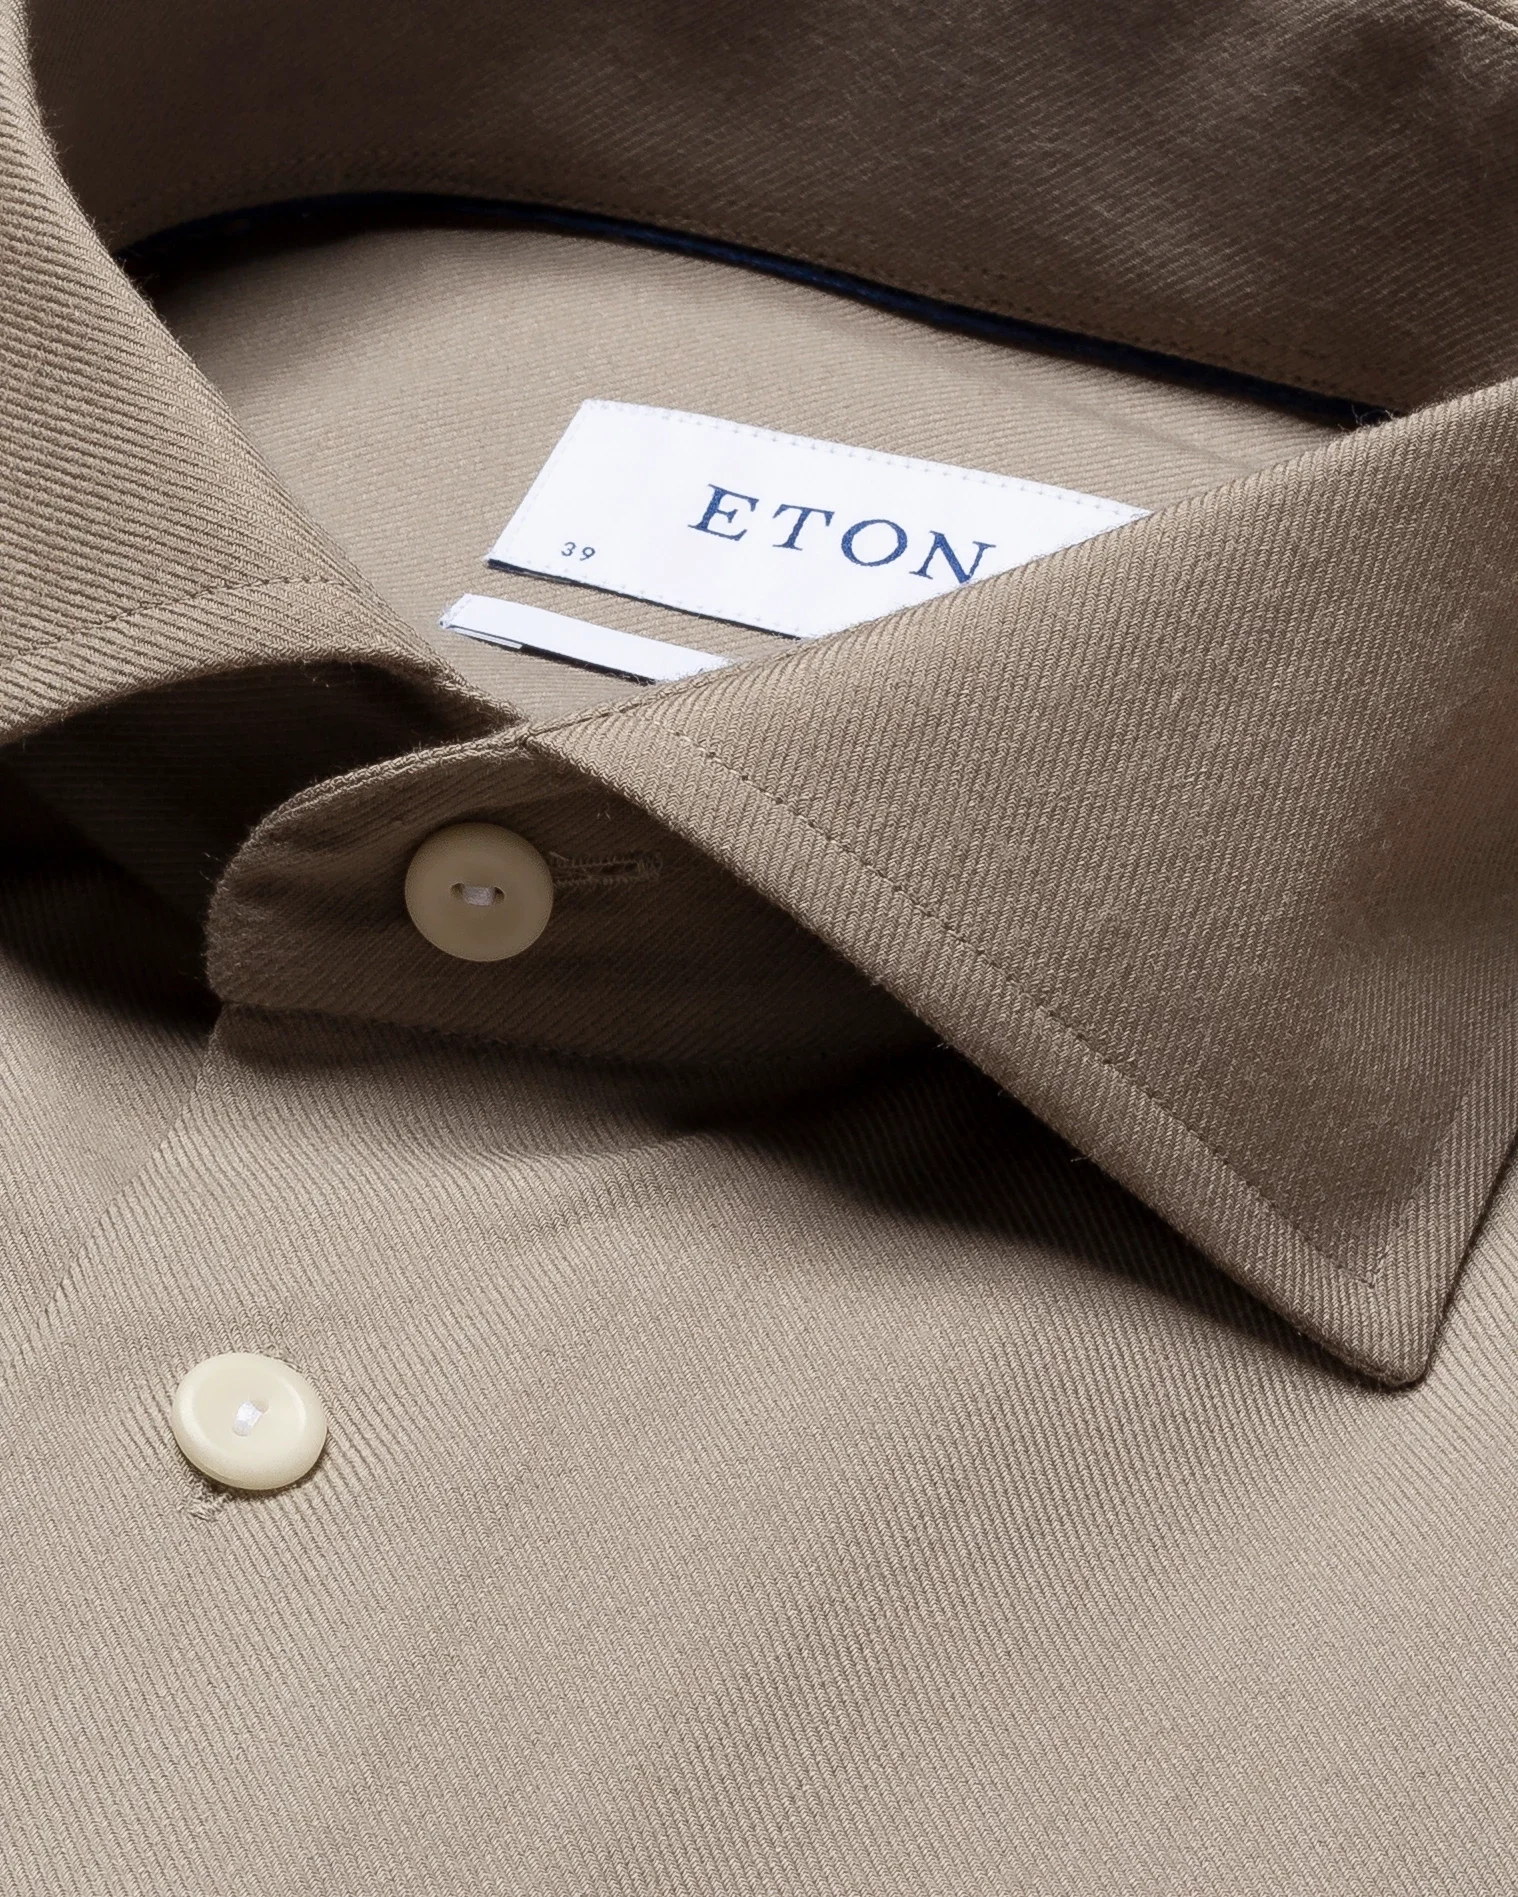 Eton - light brown brushed merino wool shirt